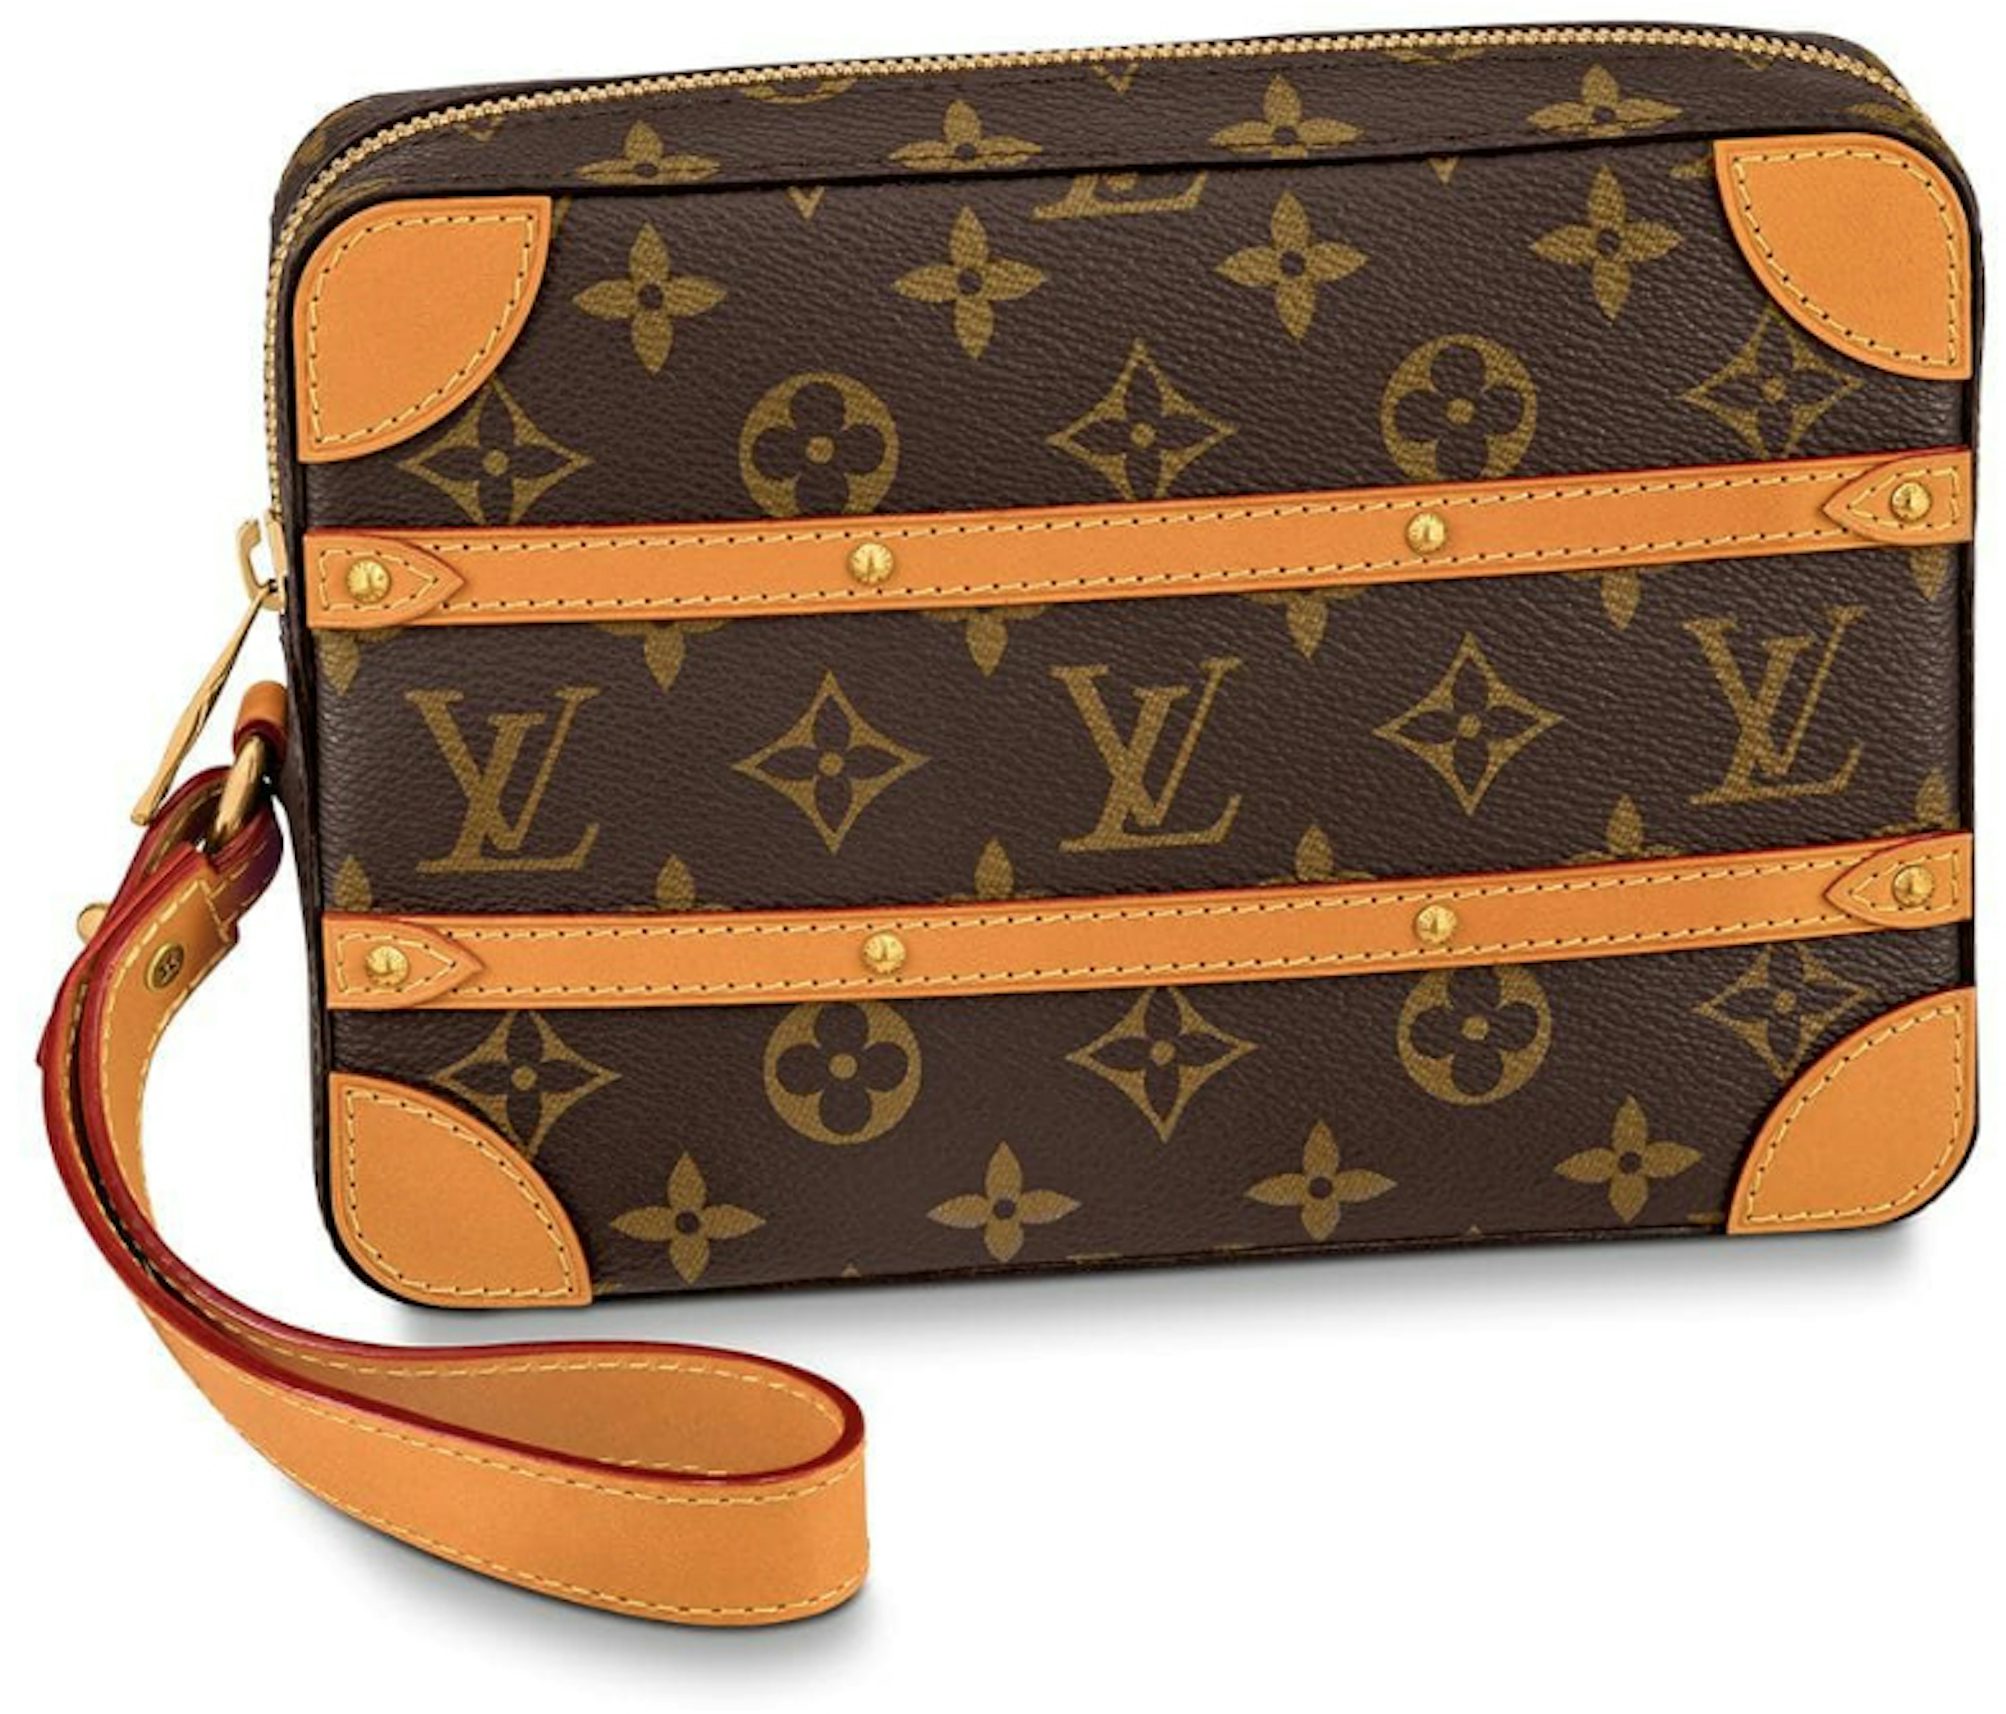 Louis Vuitton Soft Trunk Bag Monogram See Through Mesh